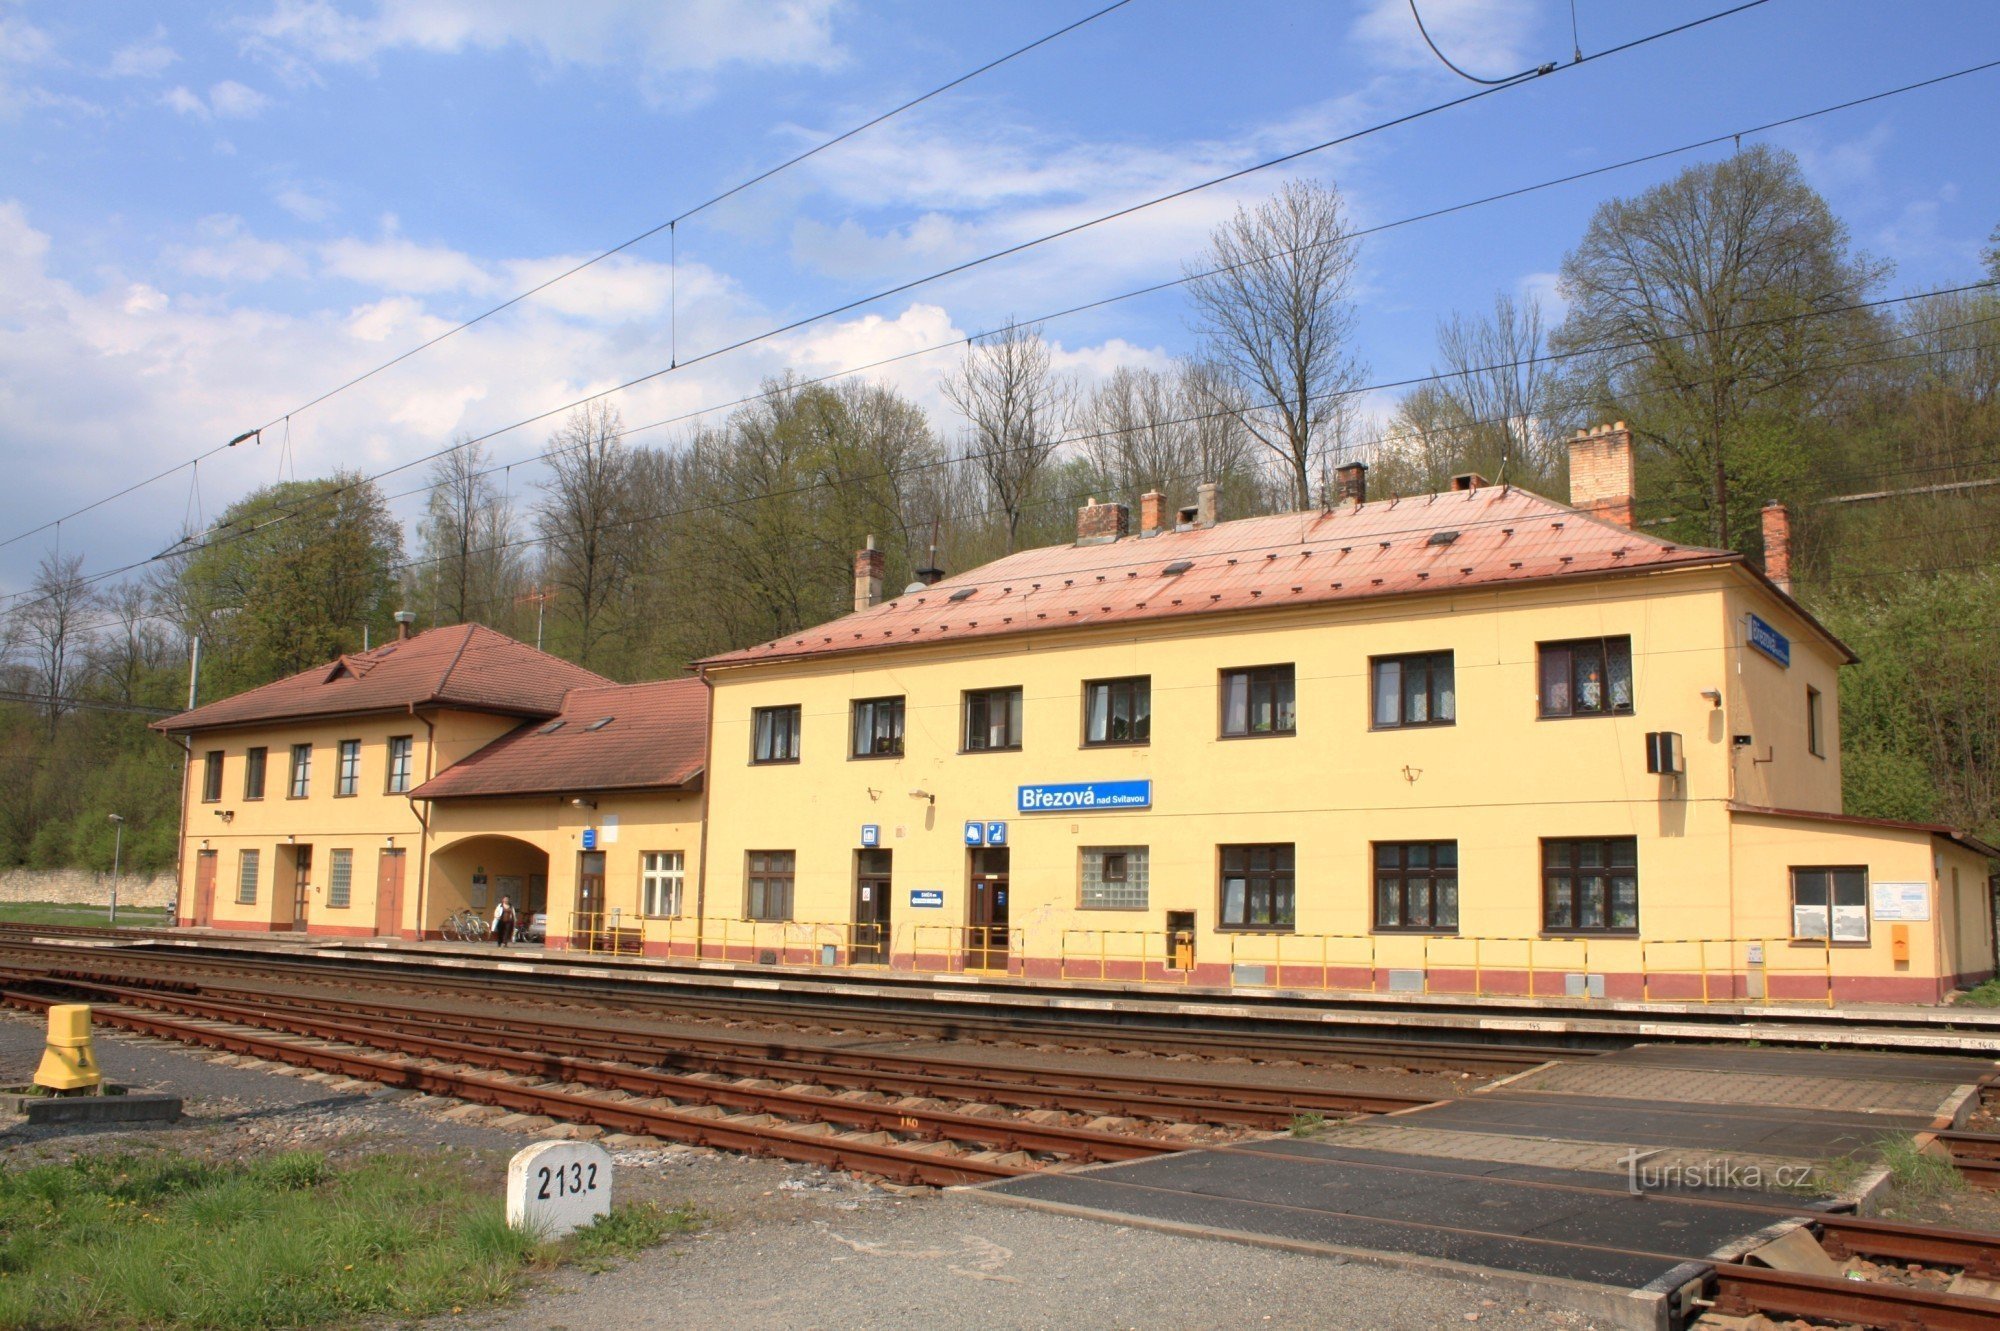 Březová nad Svitavou - estação ferroviária